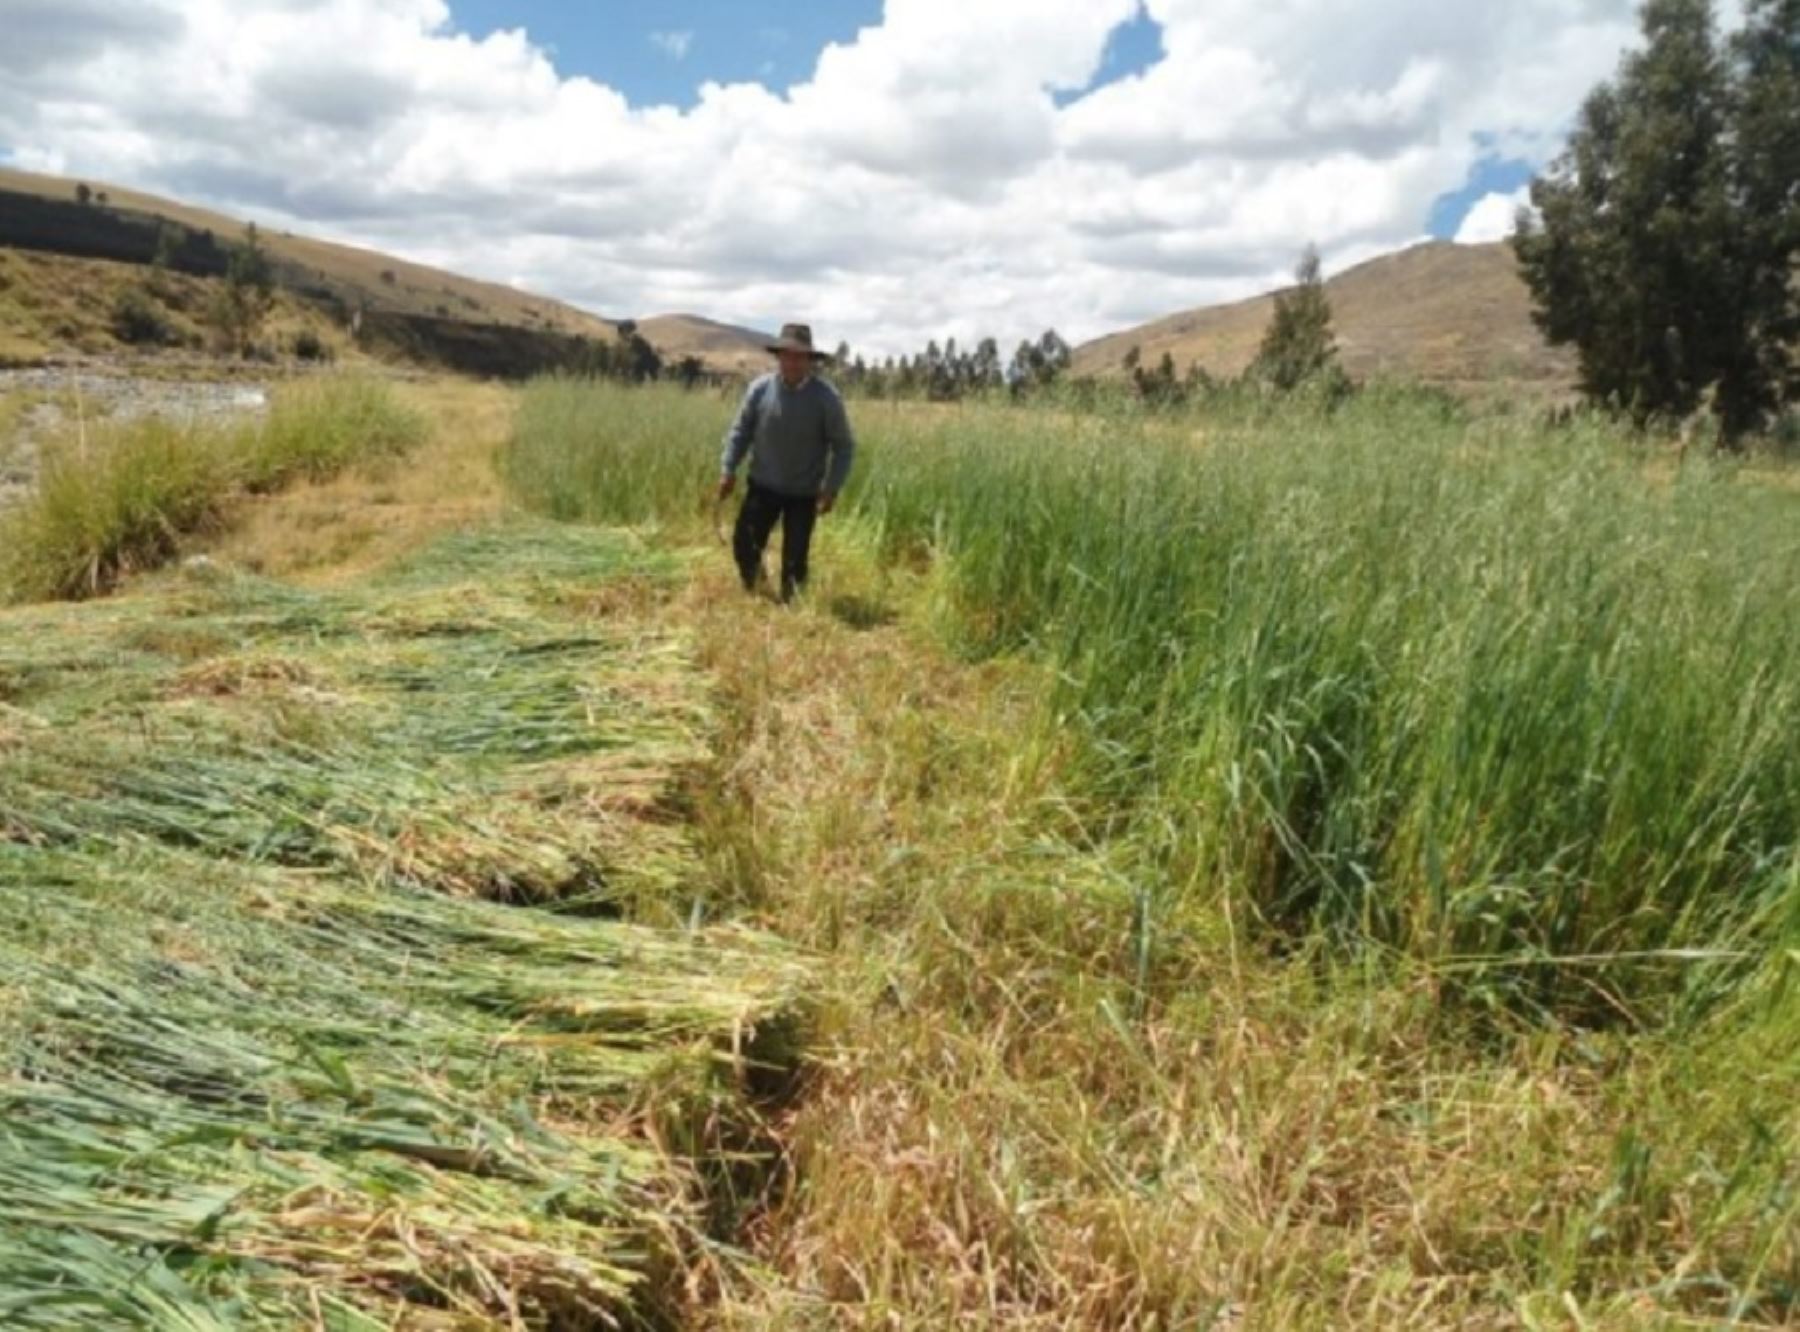 La Libertad: campaña de siembra de pastos y forraje mejorará producción ganadera rural. Foto: Agro Rural/Minagri